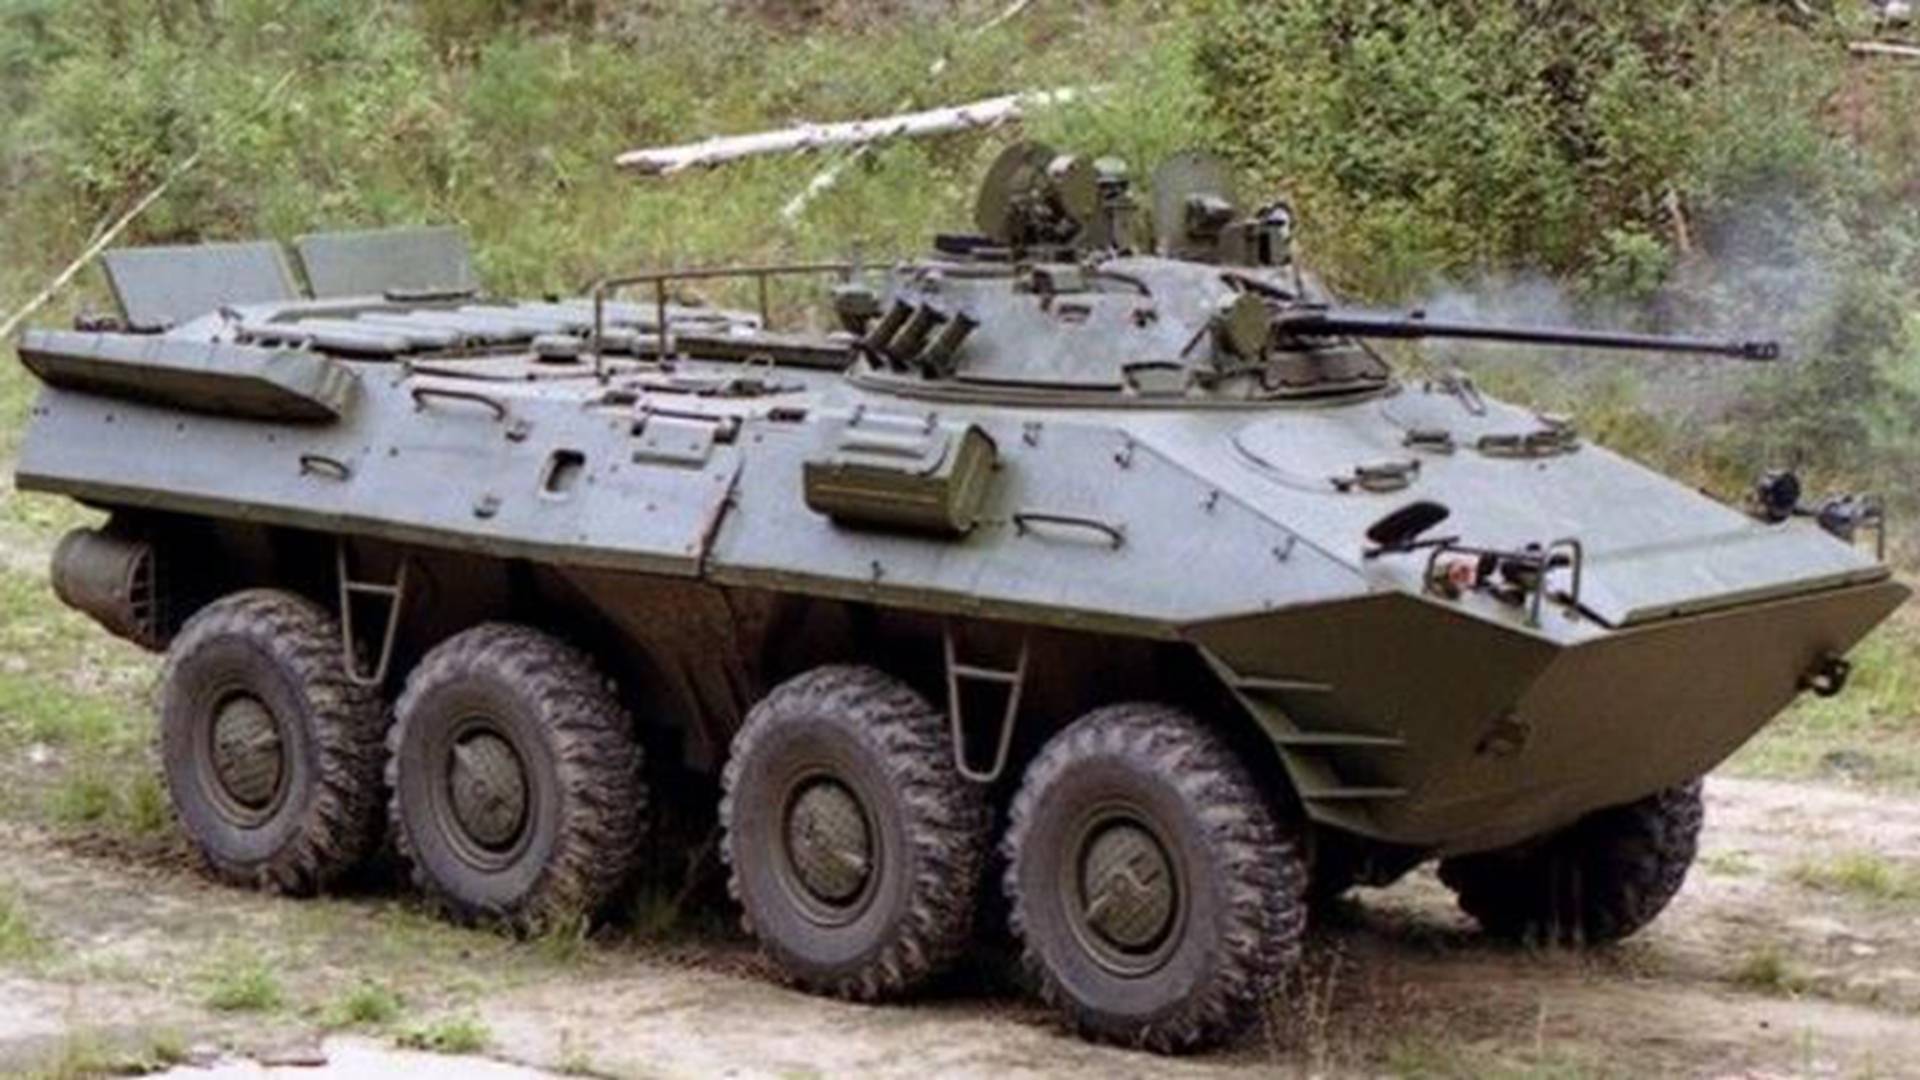 时间来到1993年,btr装甲车的研发厂商—俄罗斯阿尔扎马斯工厂接到了